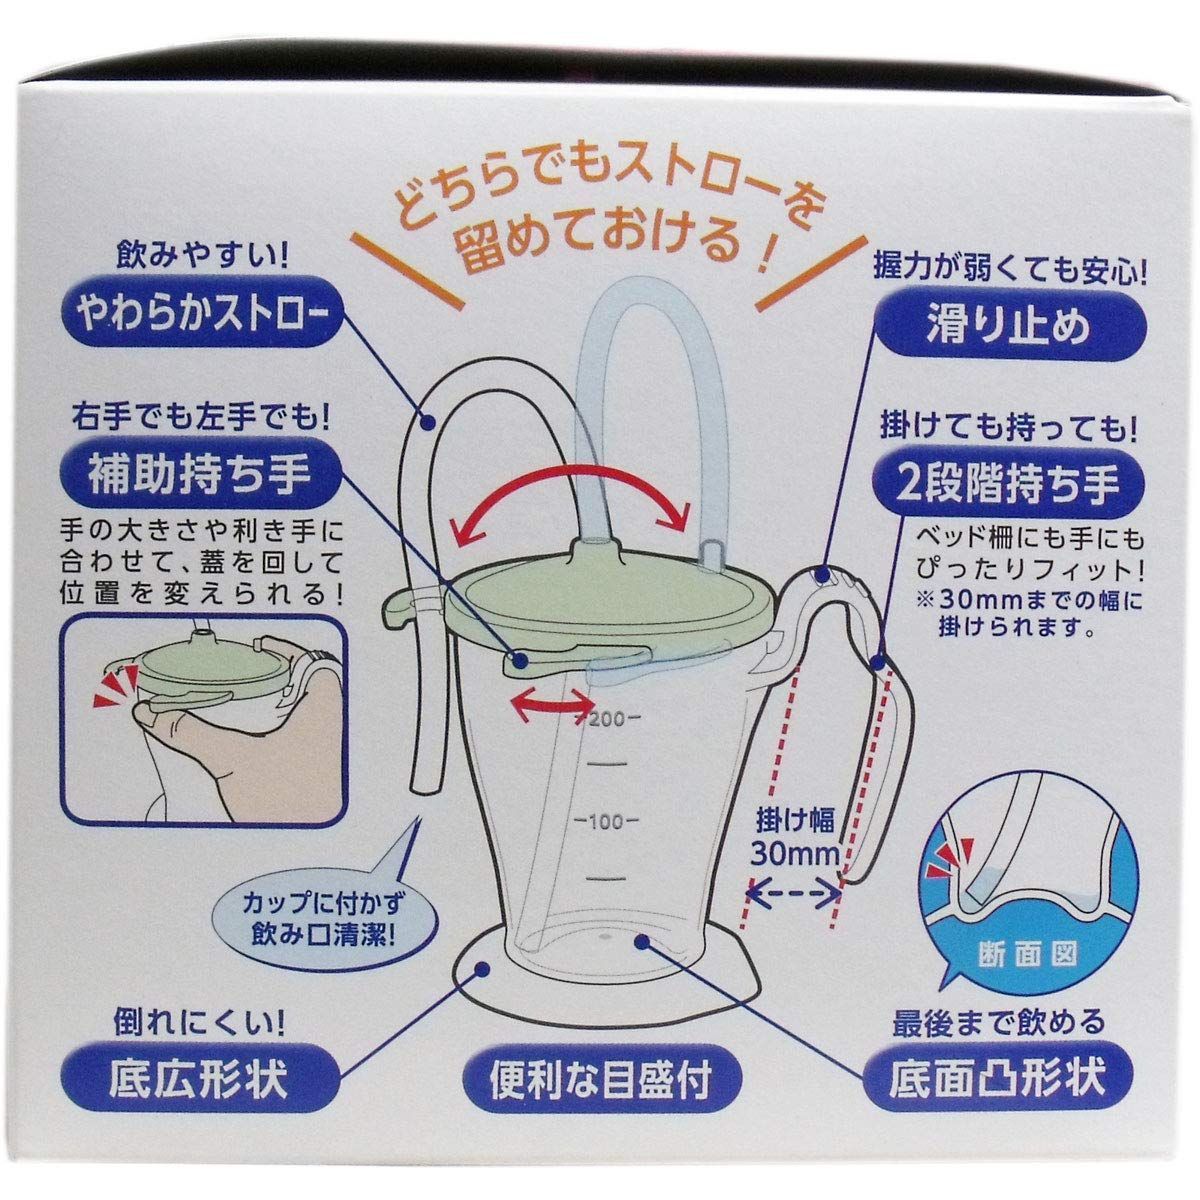 オオサキメディカル プラスハート ストローカップ グリーン - 食事介助商品